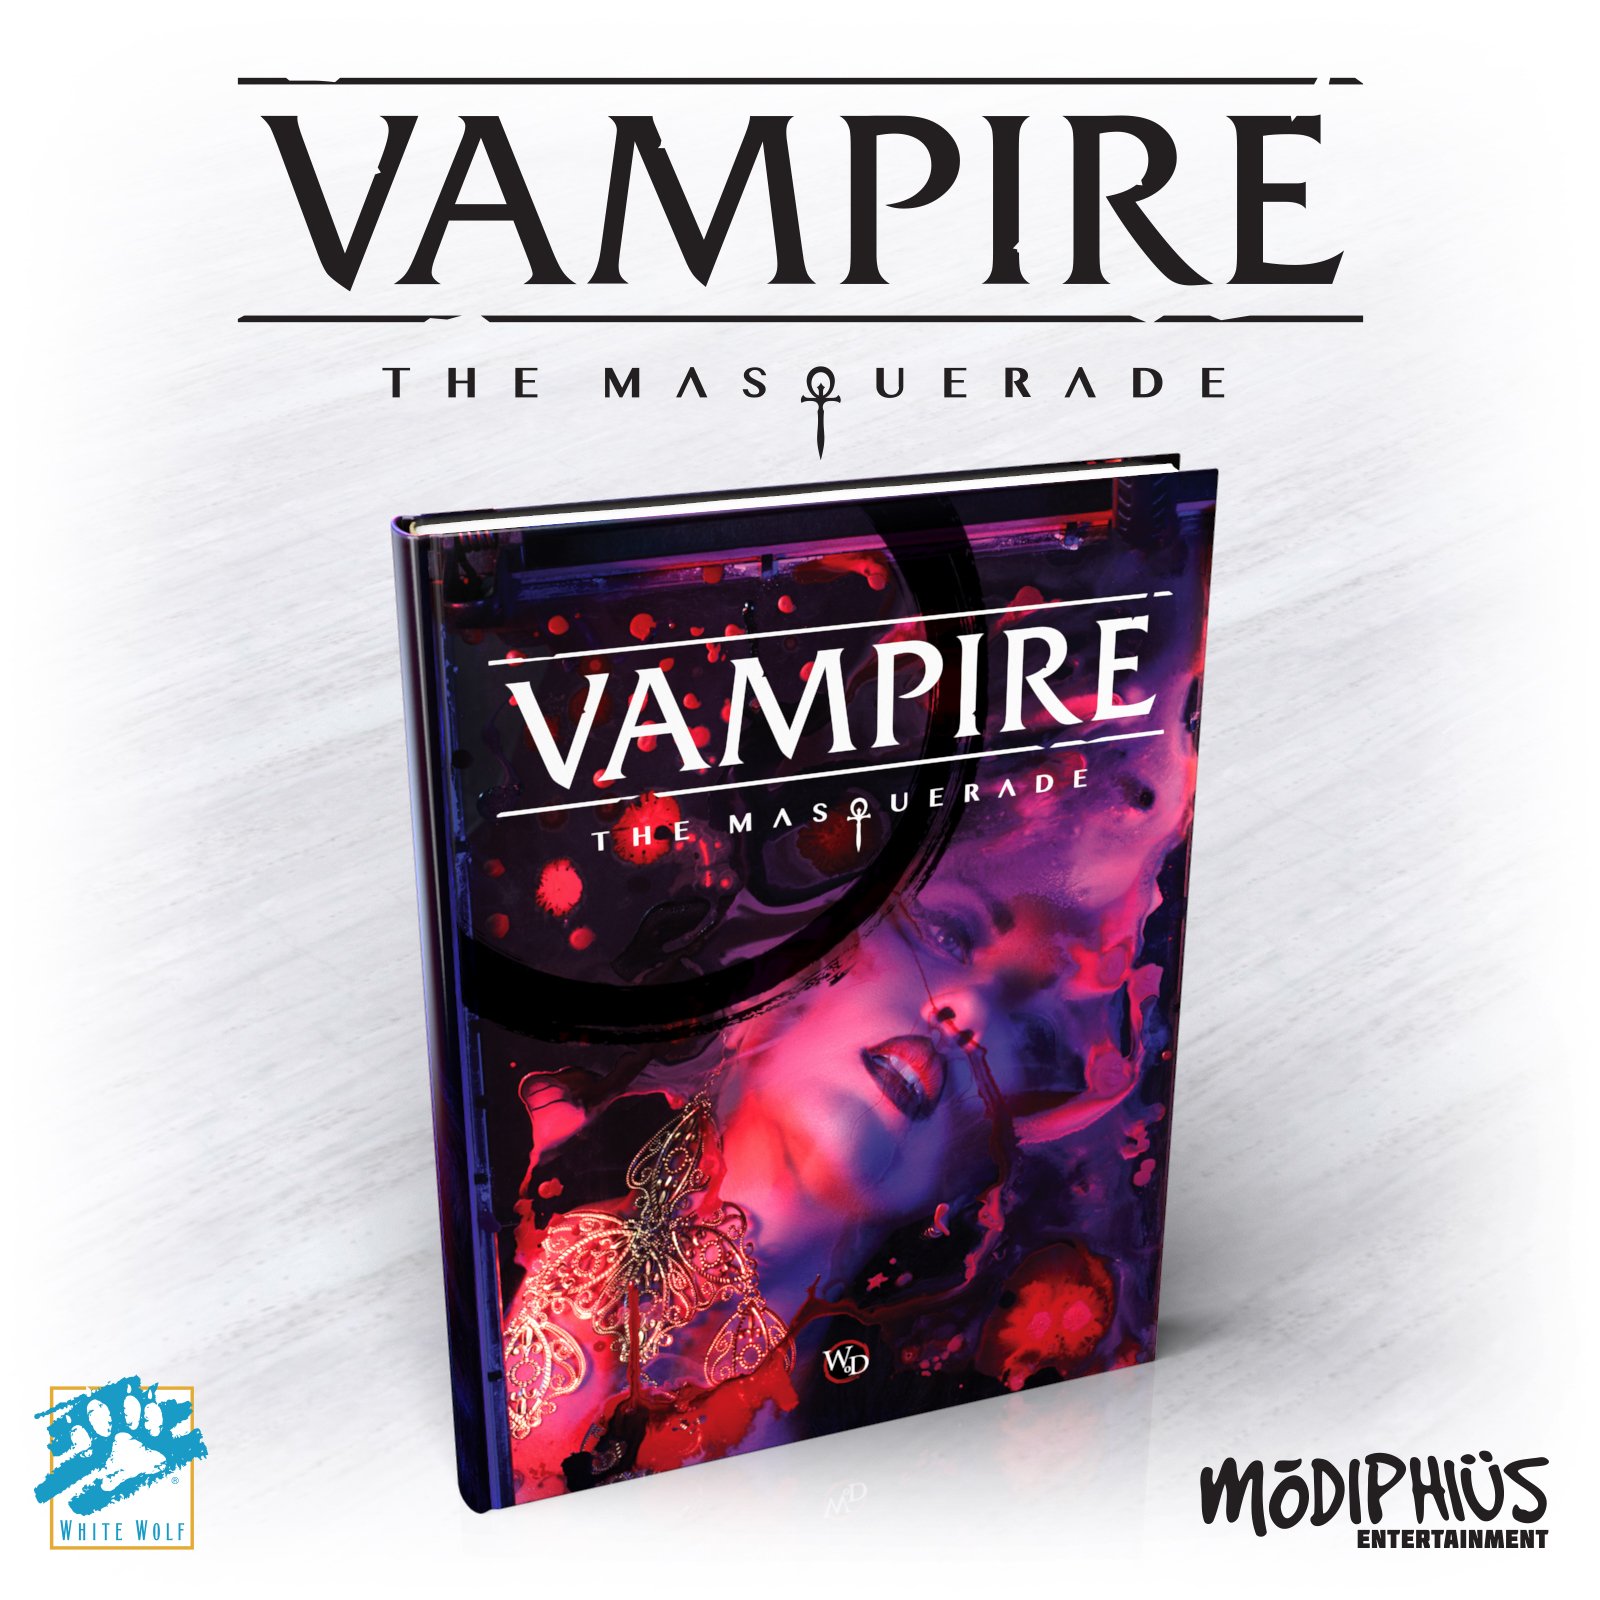 Vampire: The Masquerade 5th Edition Deluxe Core Rulebook